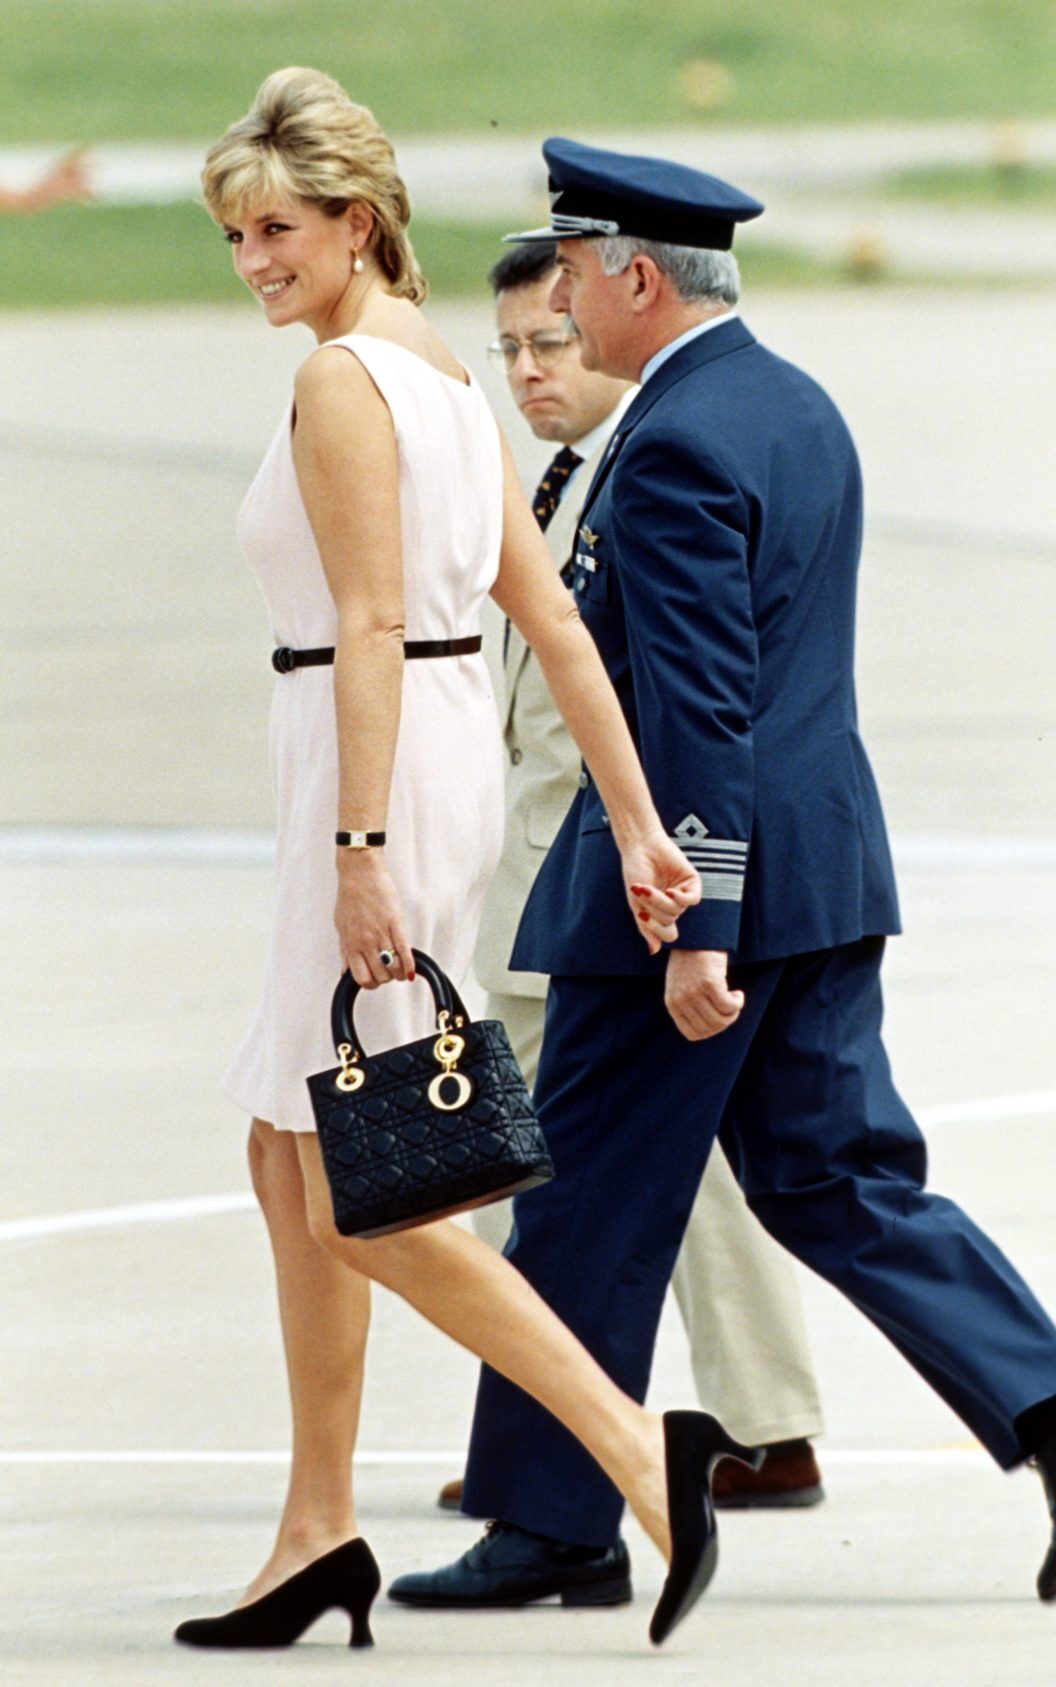 Thiết kế túi xách Lady Dior trở thành phụ kiện yêu thích của Công nương Diana sau chuyến công du năm 1995.